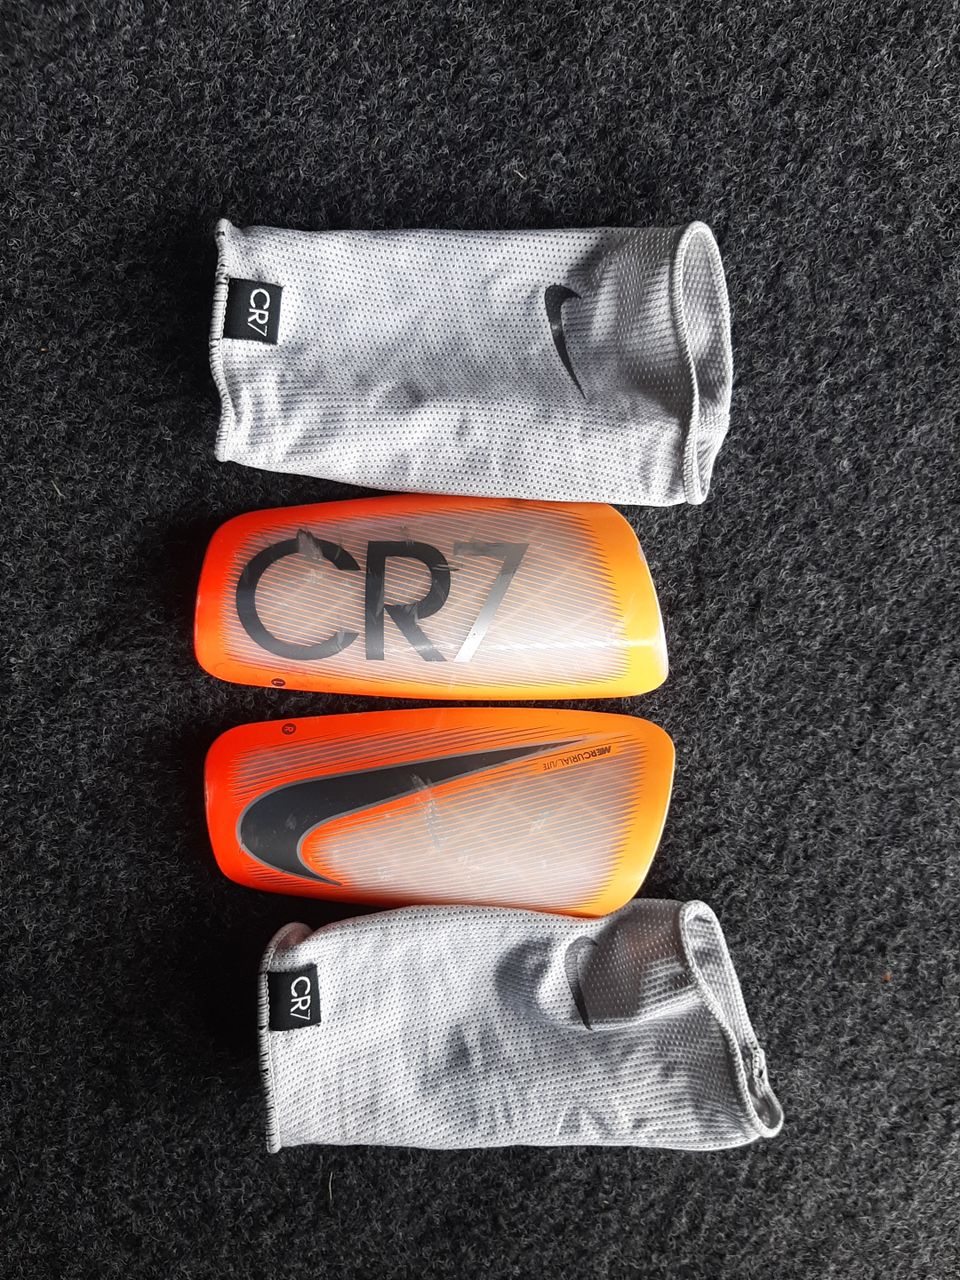 Nike CR7 säärisuojat